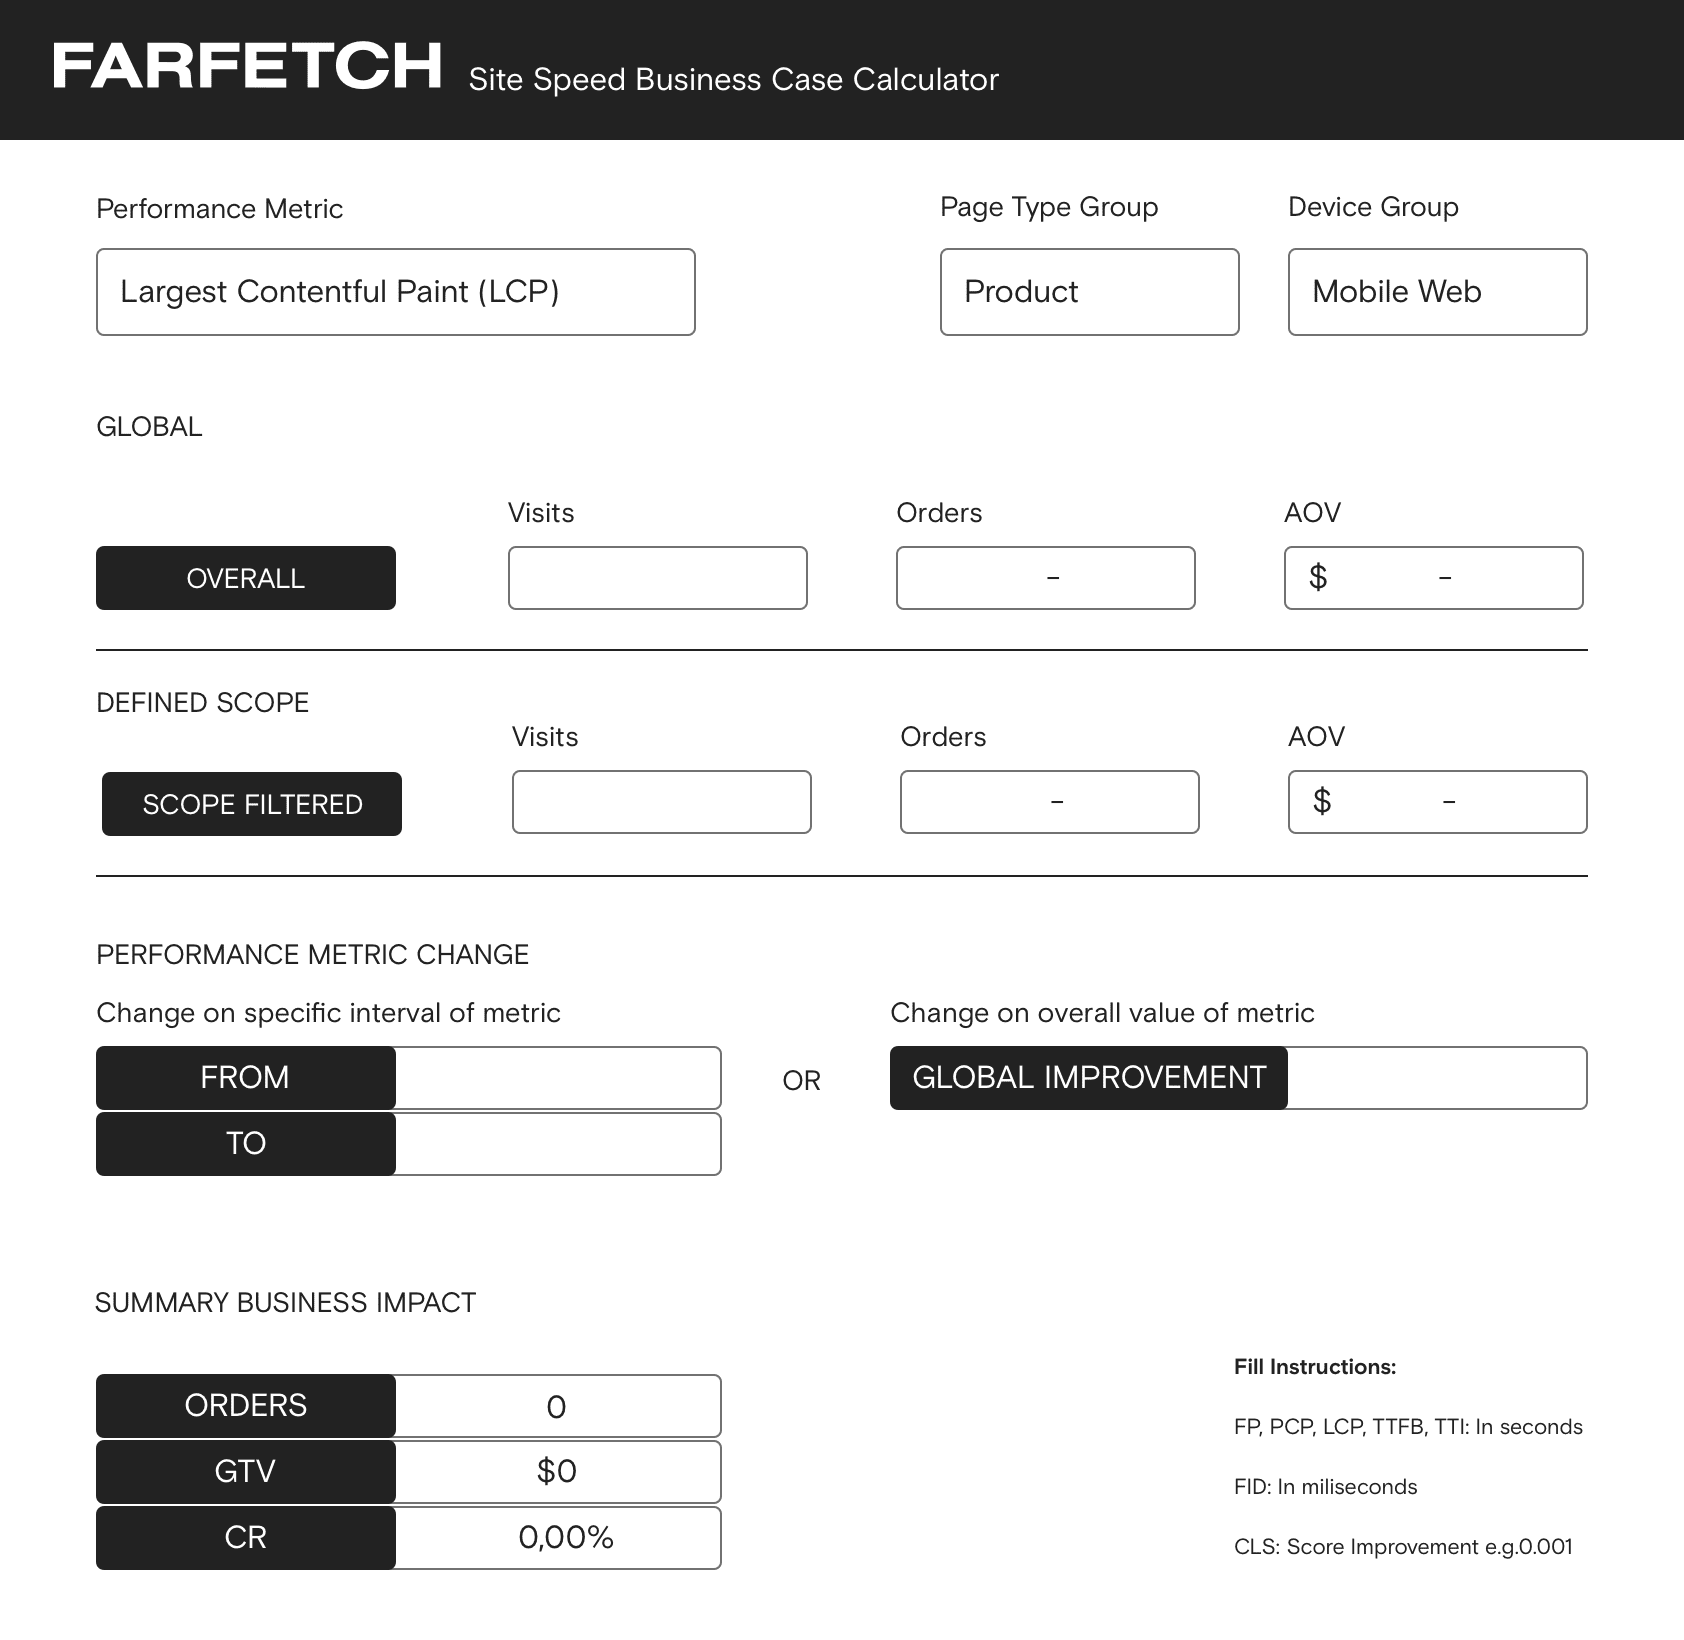 Farfetch 网站速度业务案例计算器的屏幕截图。